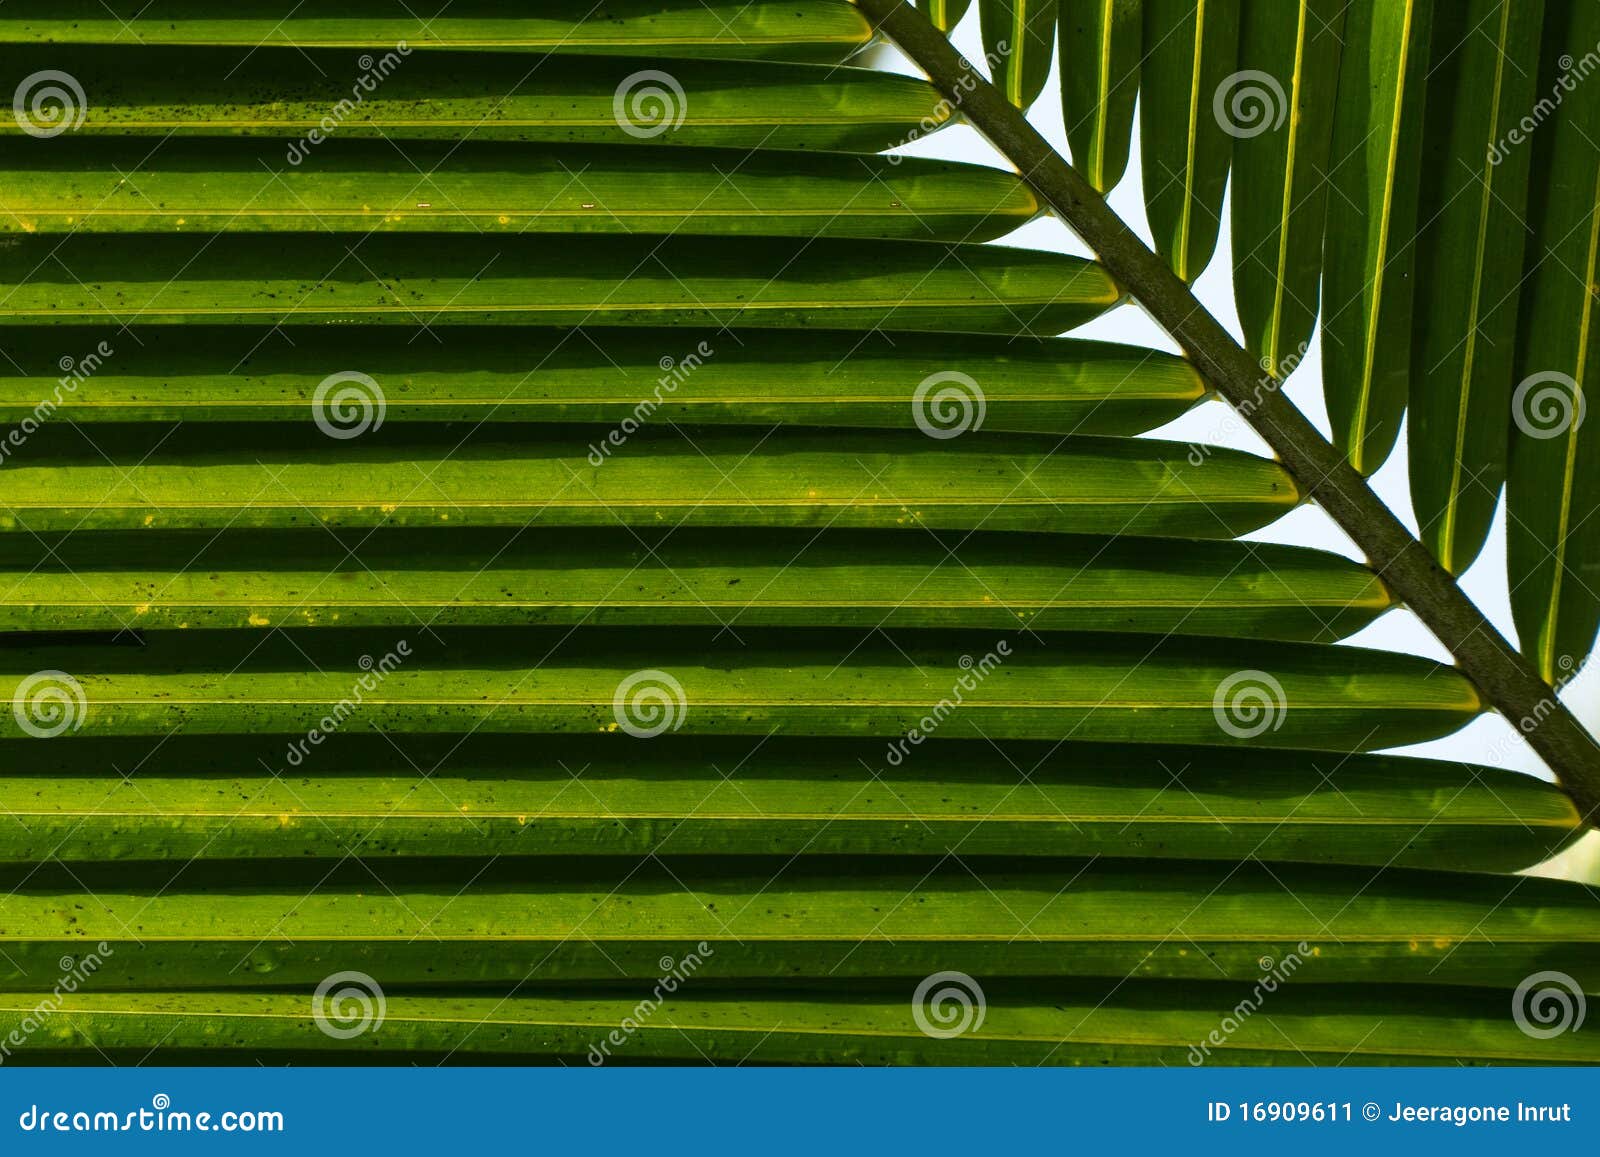 Coconut Leaf Background stock image. Image of green, backlit - 16909611